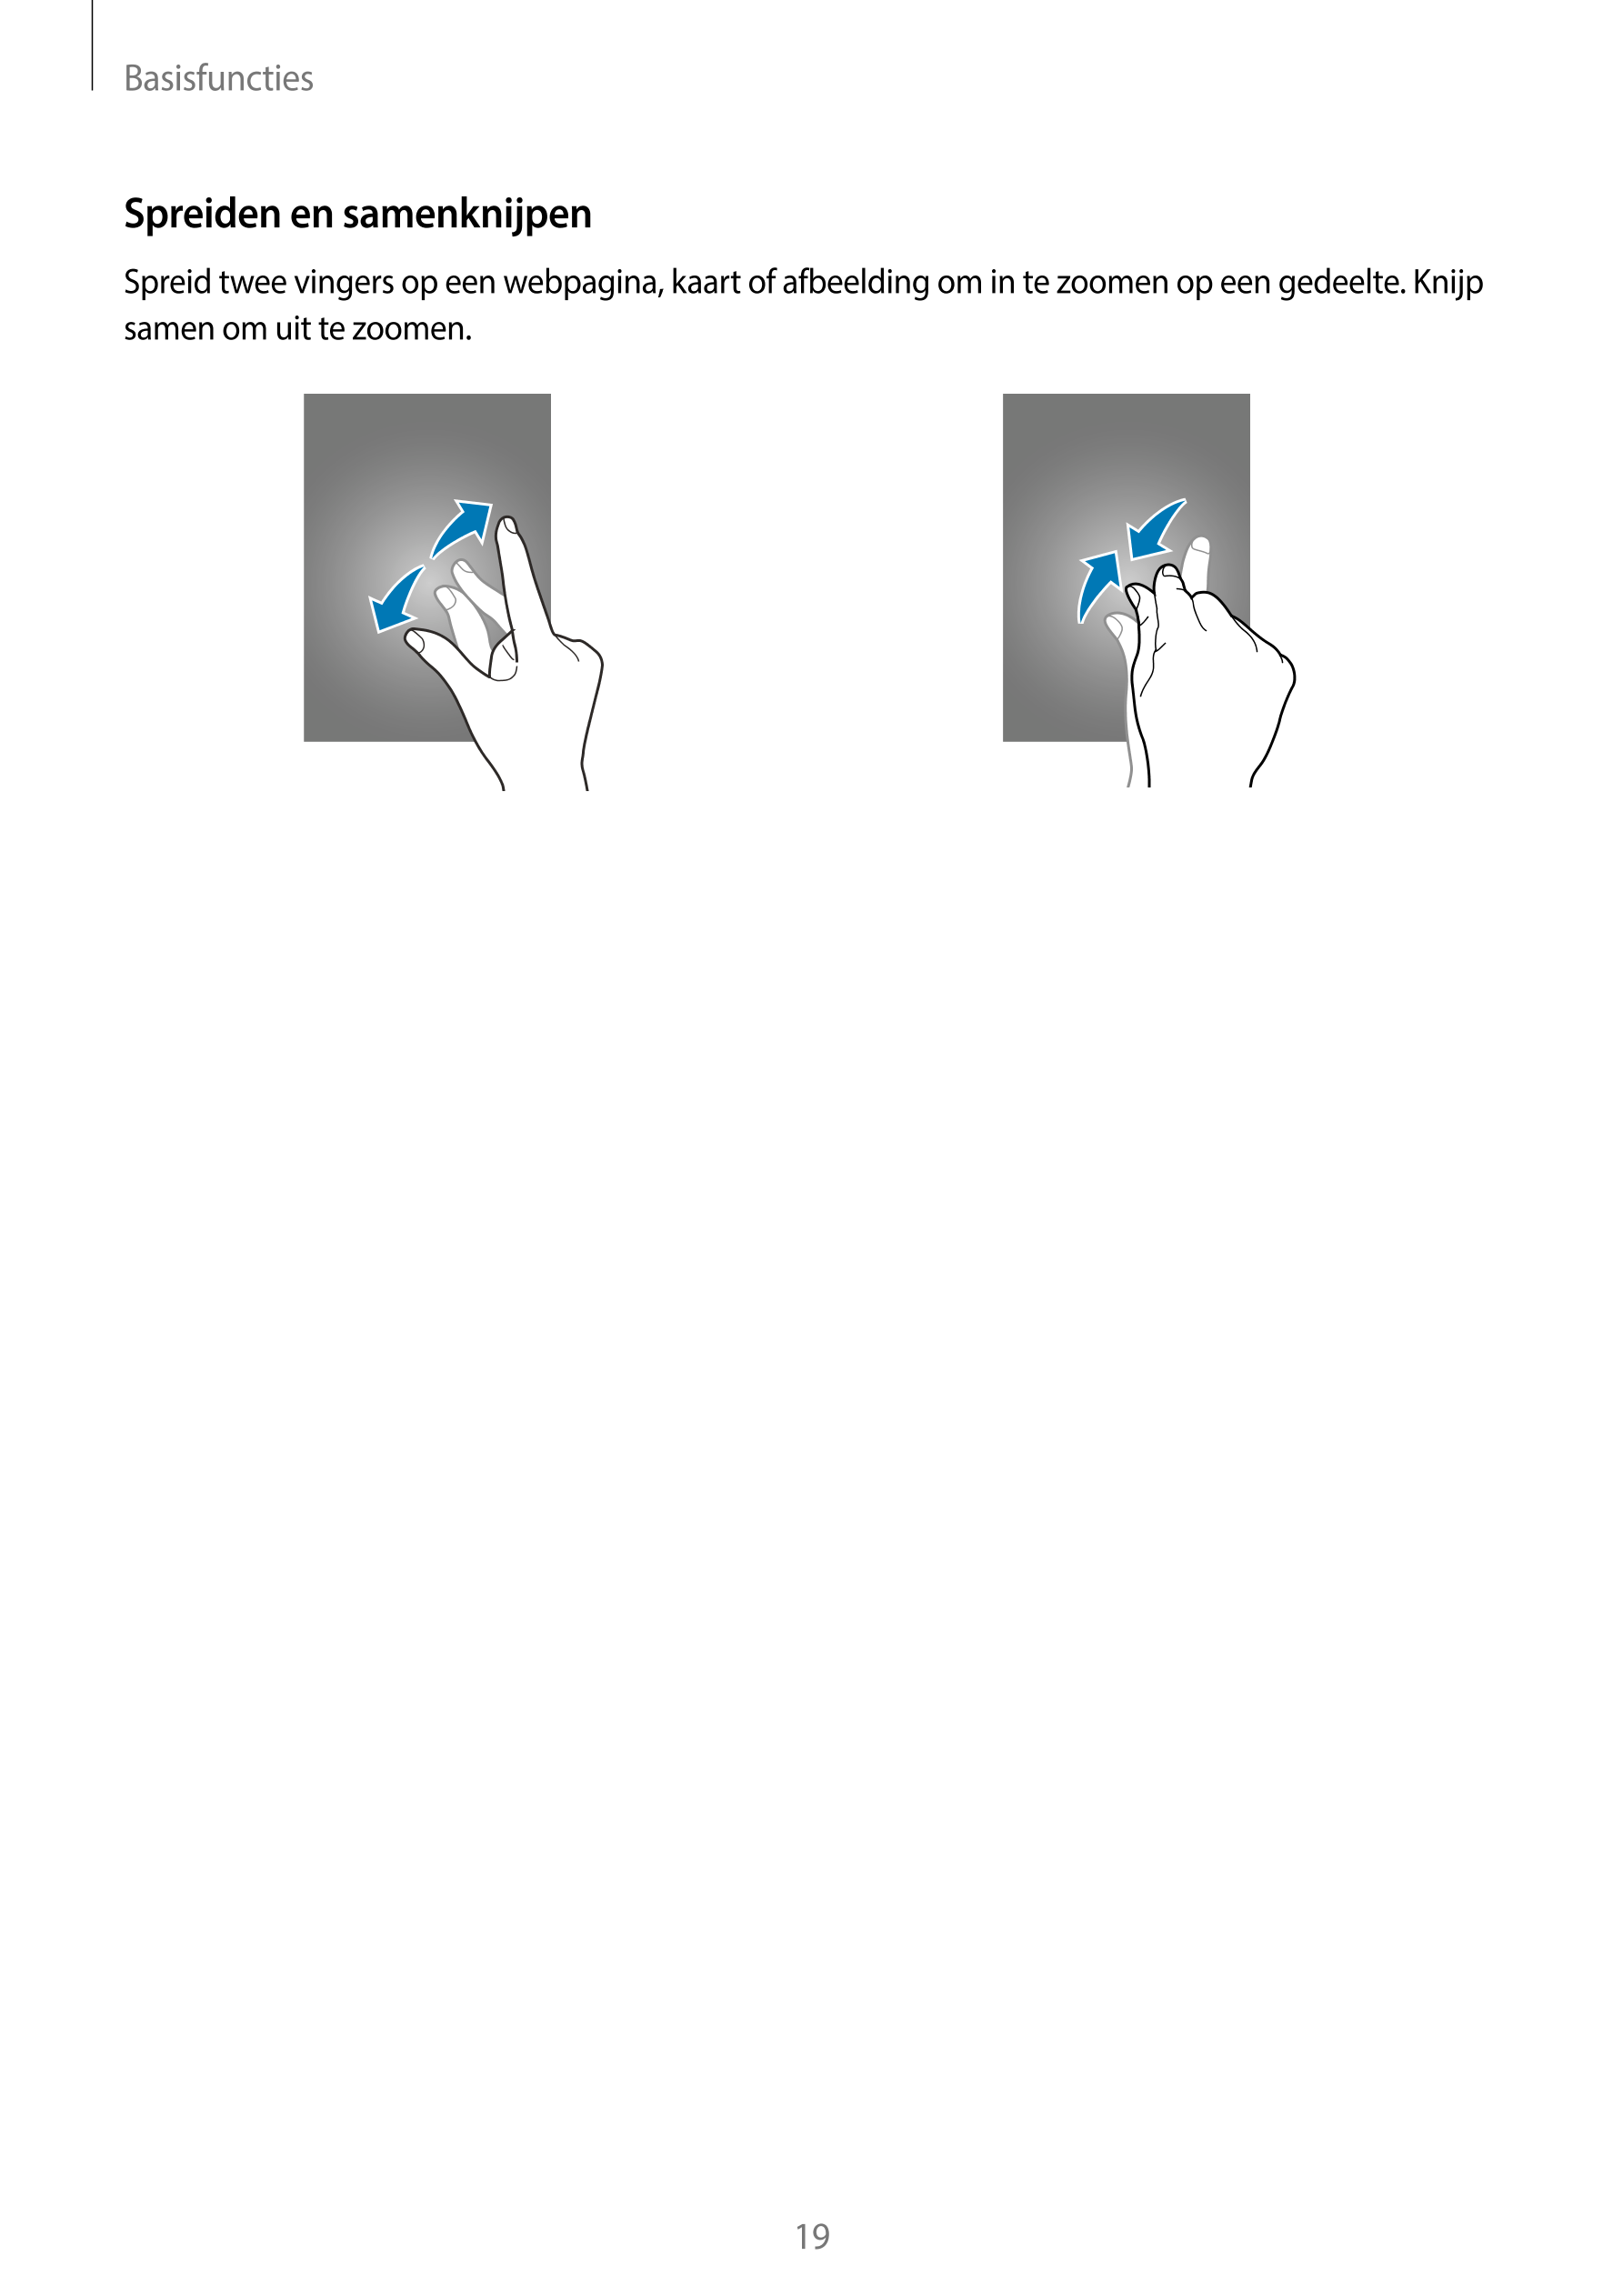 Basisfuncties
Spreiden en samenknijpen
Spreid twee vingers op een webpagina, kaart of afbeelding om in te zoomen op een gedeelte